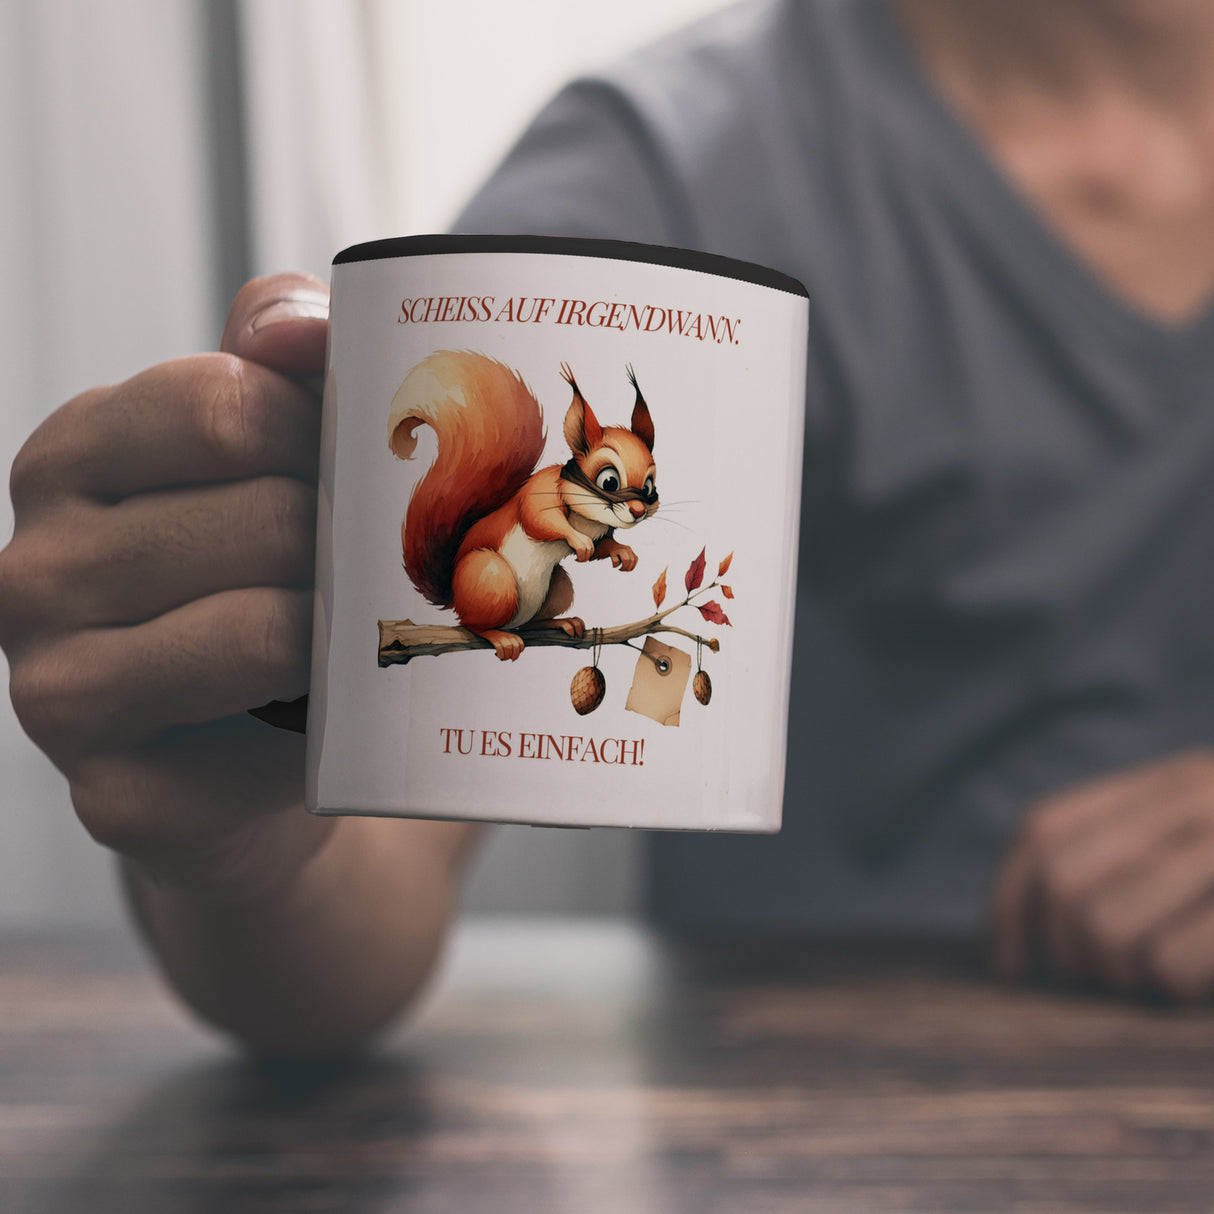 Eichhörnchen Kaffeebecher mit Spruch Scheiss auf irgendwann Tu es einfach